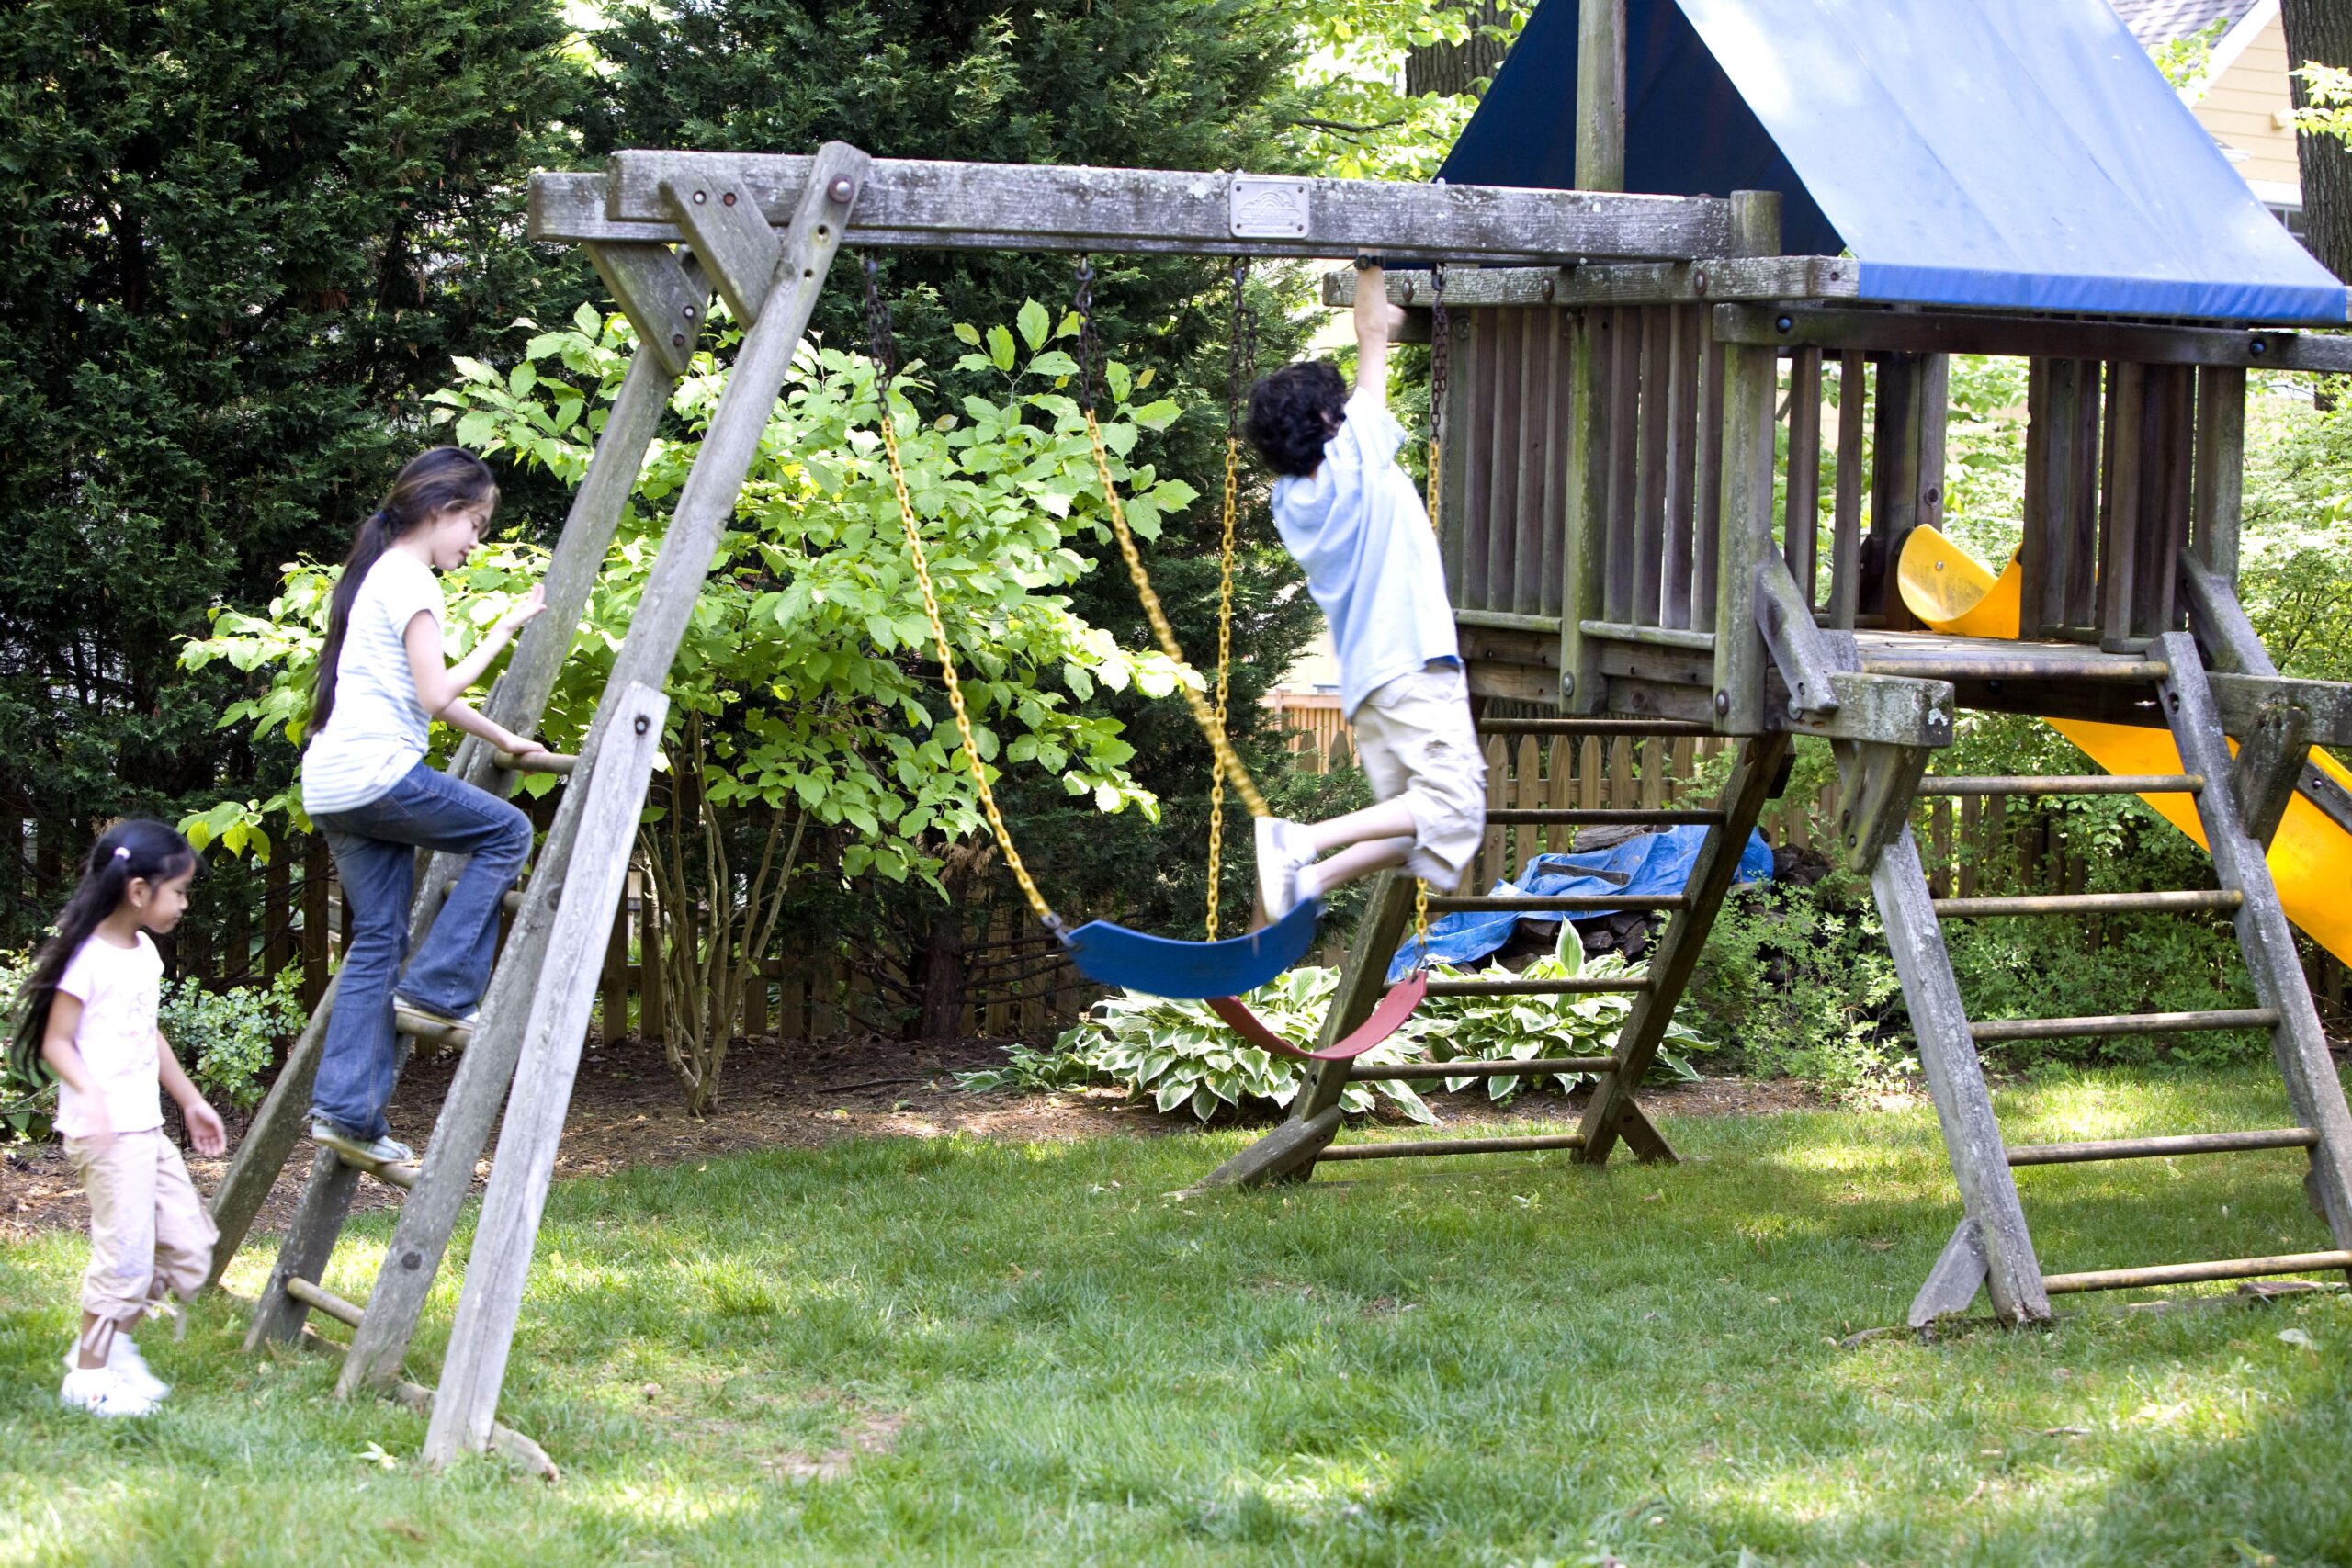 Crianças em brinquedos no quintal. Imagem ilustrativa texto brincar no quintal.